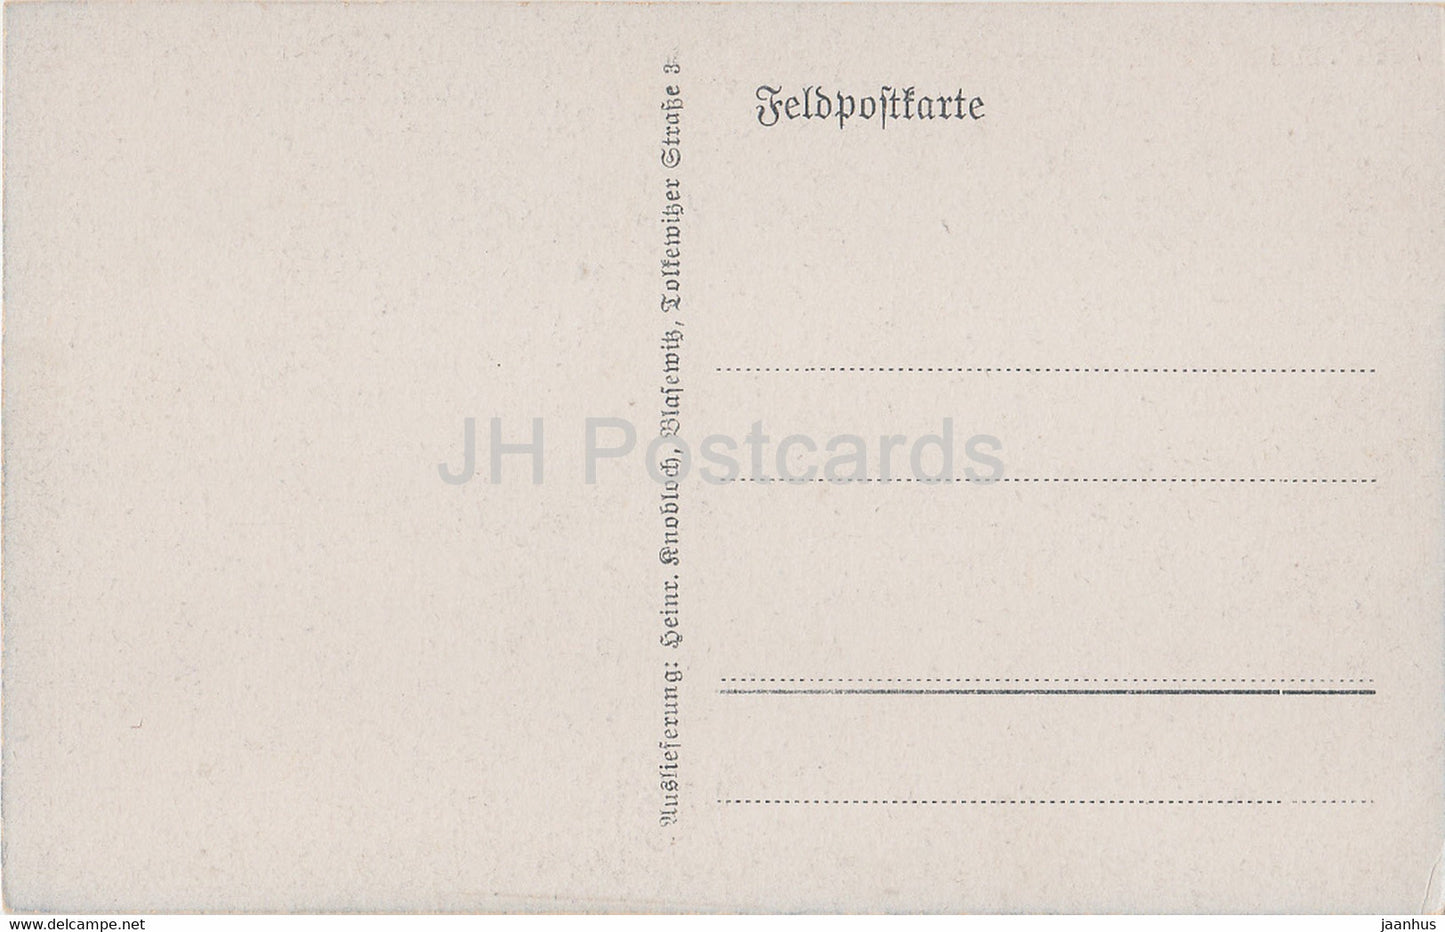 Peronne - Markt und Rathaus - Feldpostkarte - militaire - cheval - 208 - carte postale ancienne - France - utilisé